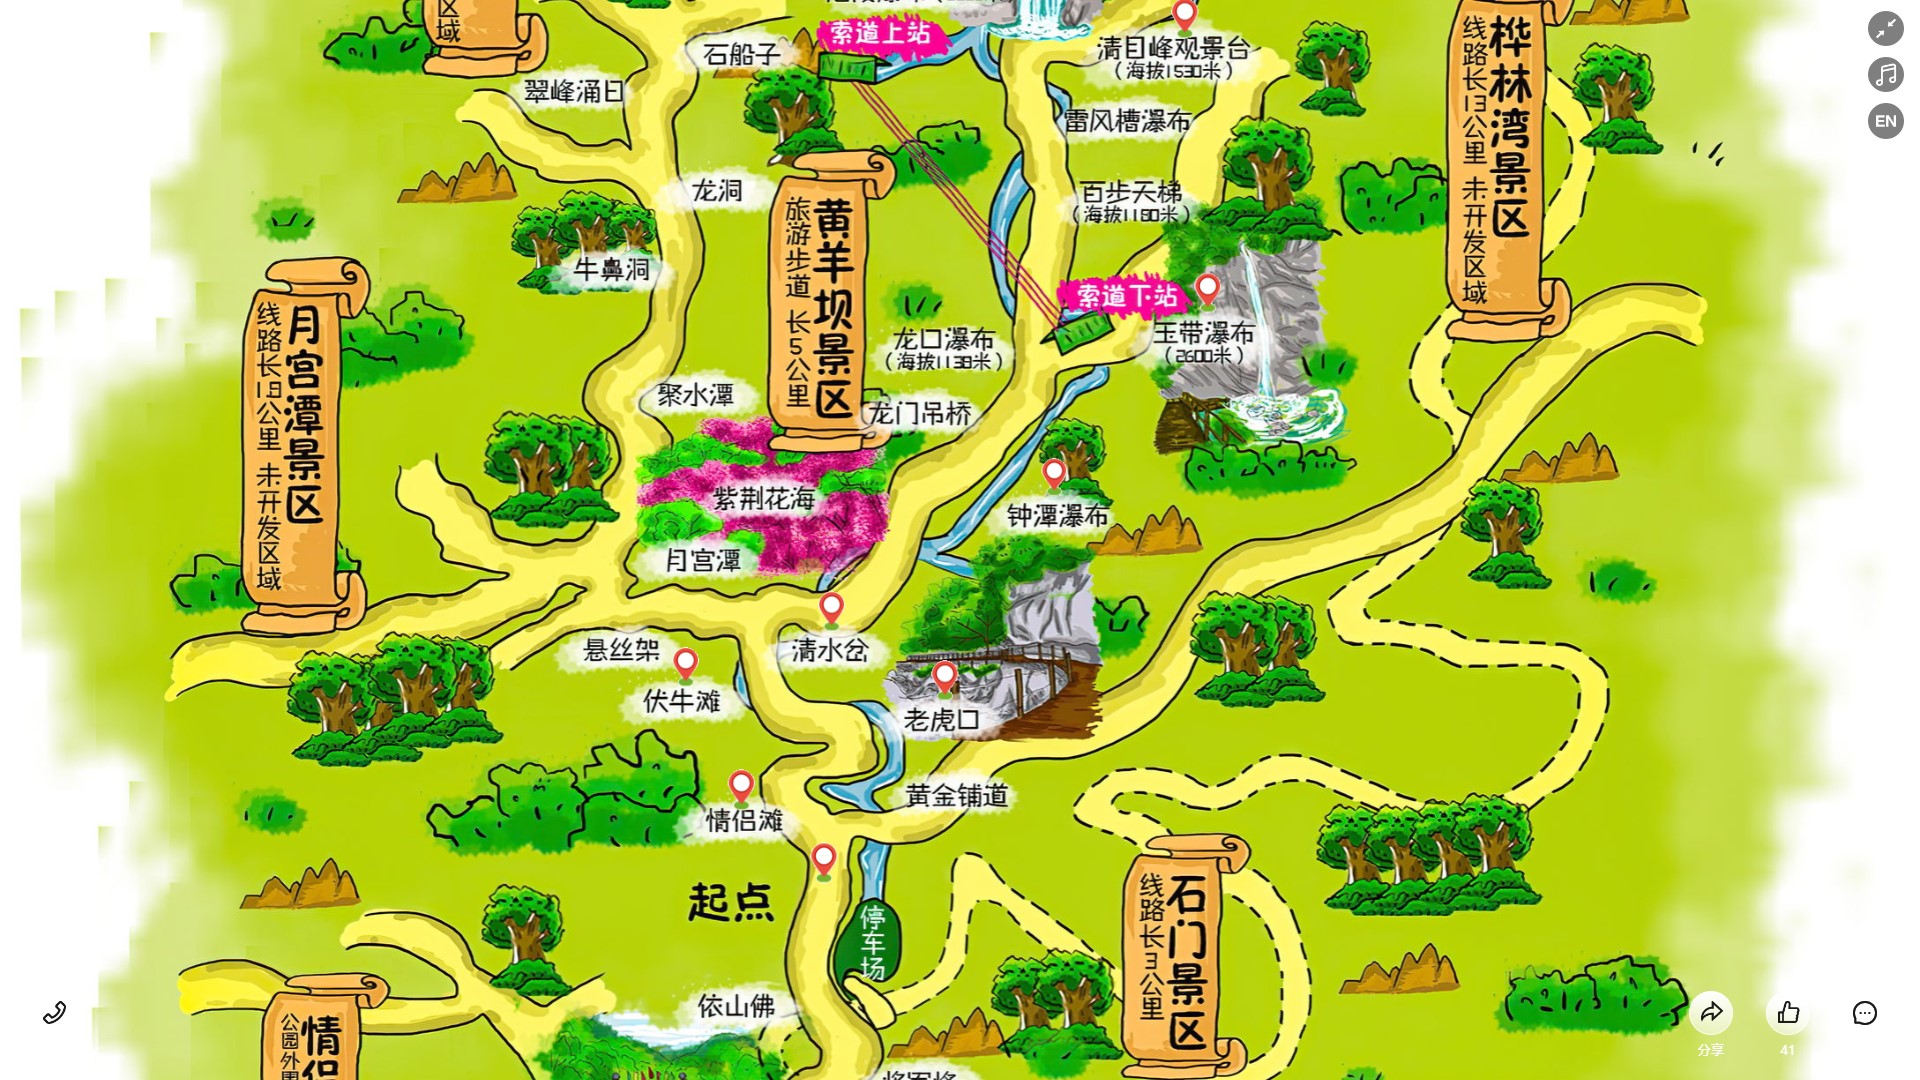 林州景区导览系统